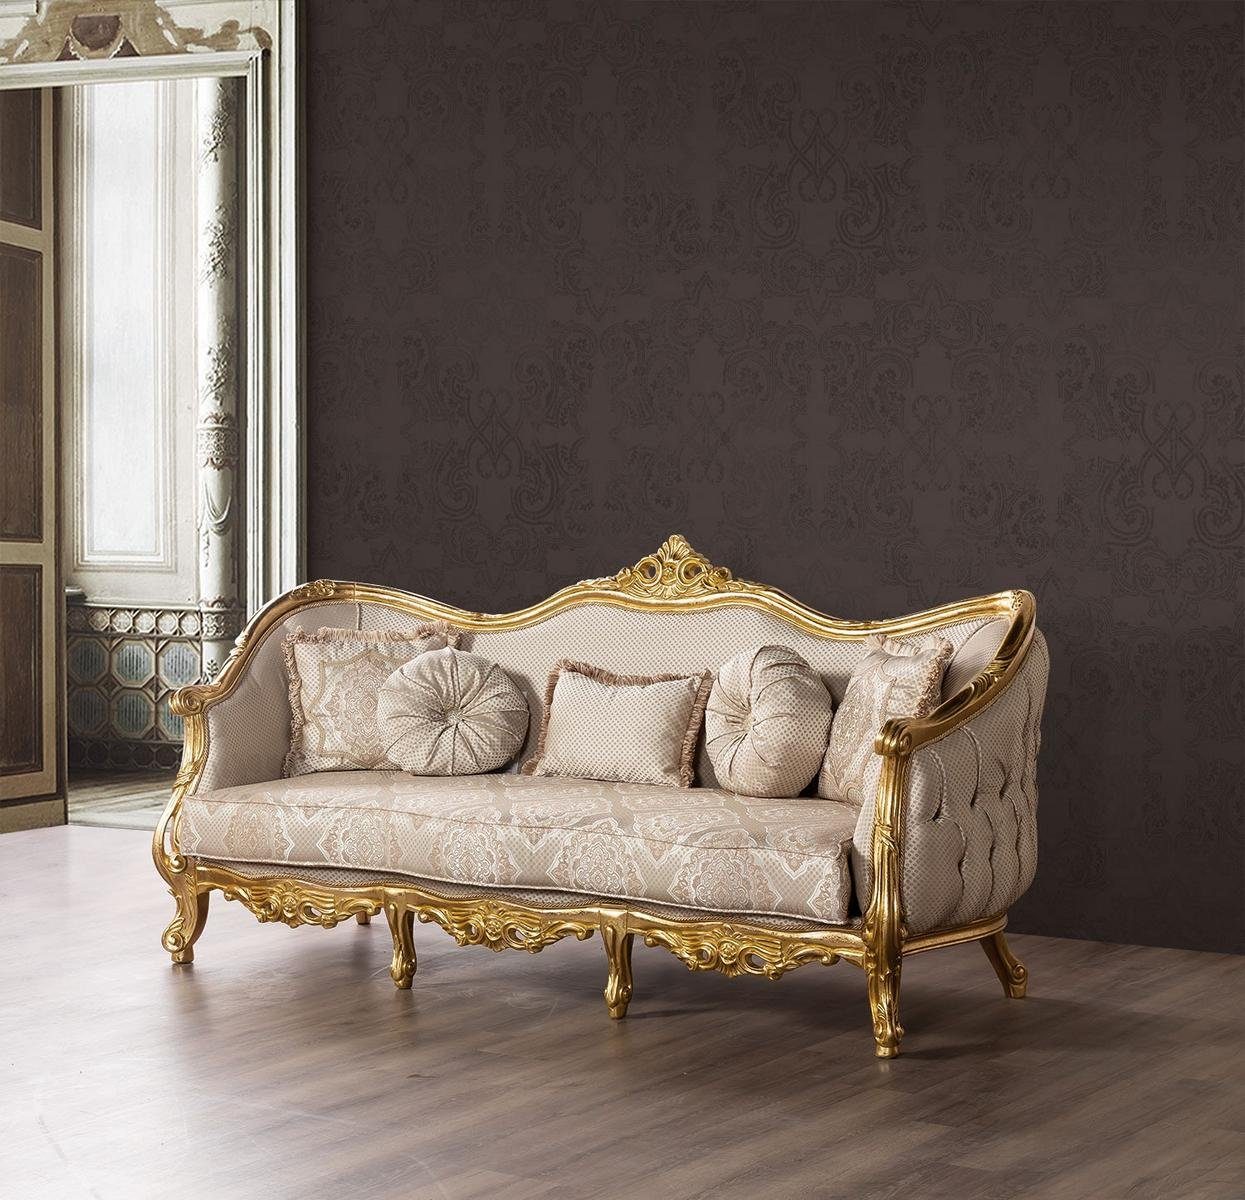 JVmoebel Luxus Couch Couchen Möbel Sofa, Klassischer Sofa Dreisitzer